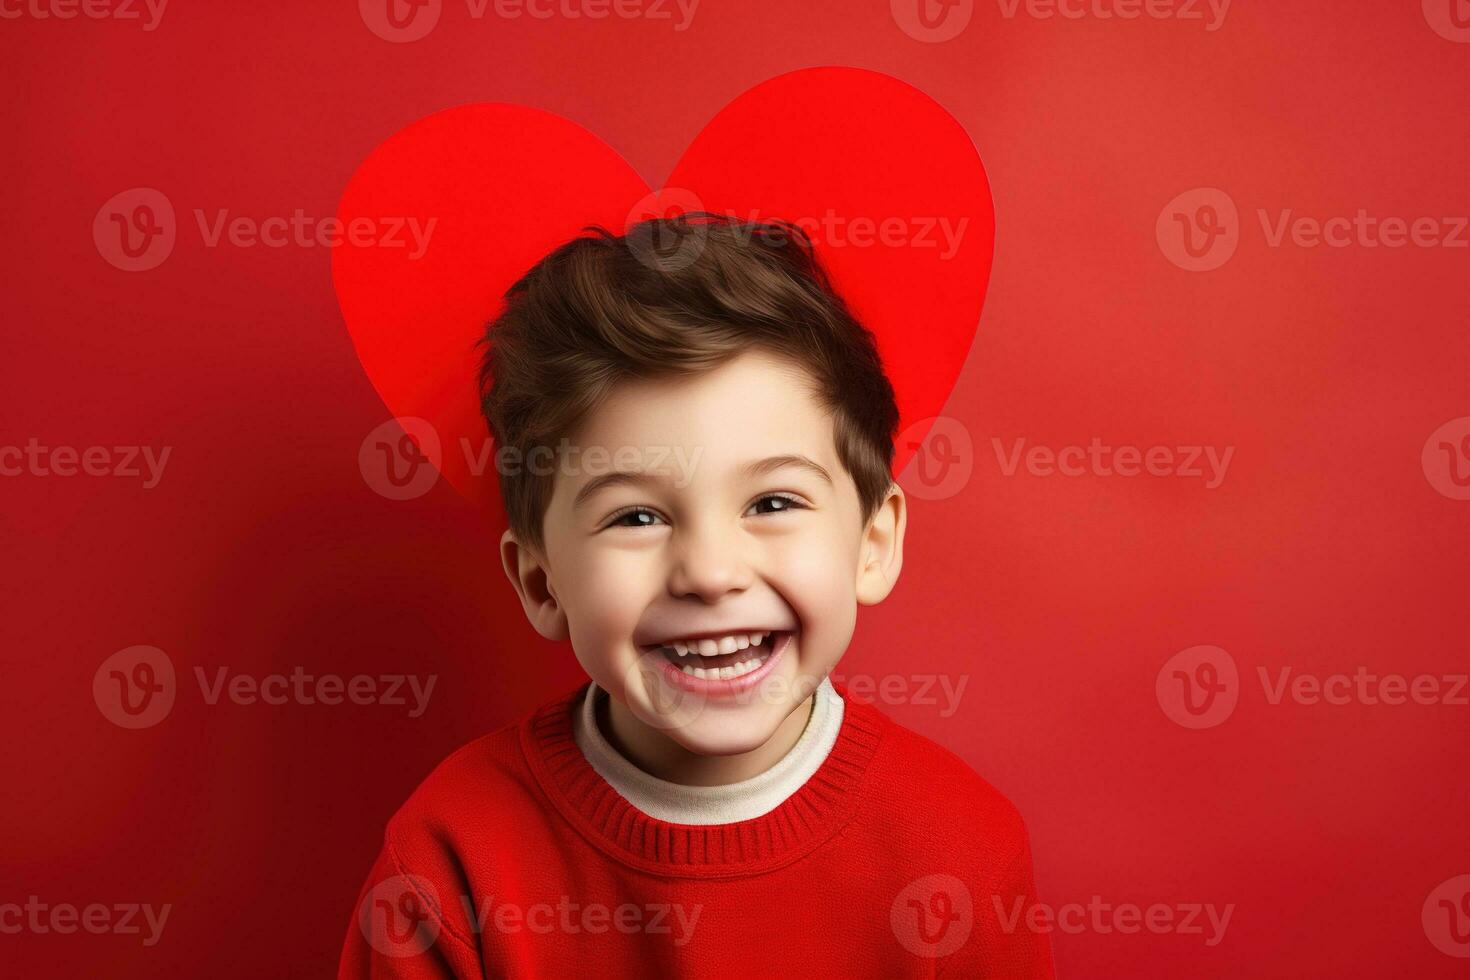 ai gerado feliz pequeno Garoto com vermelho corações em dia dos namorados dia. foto